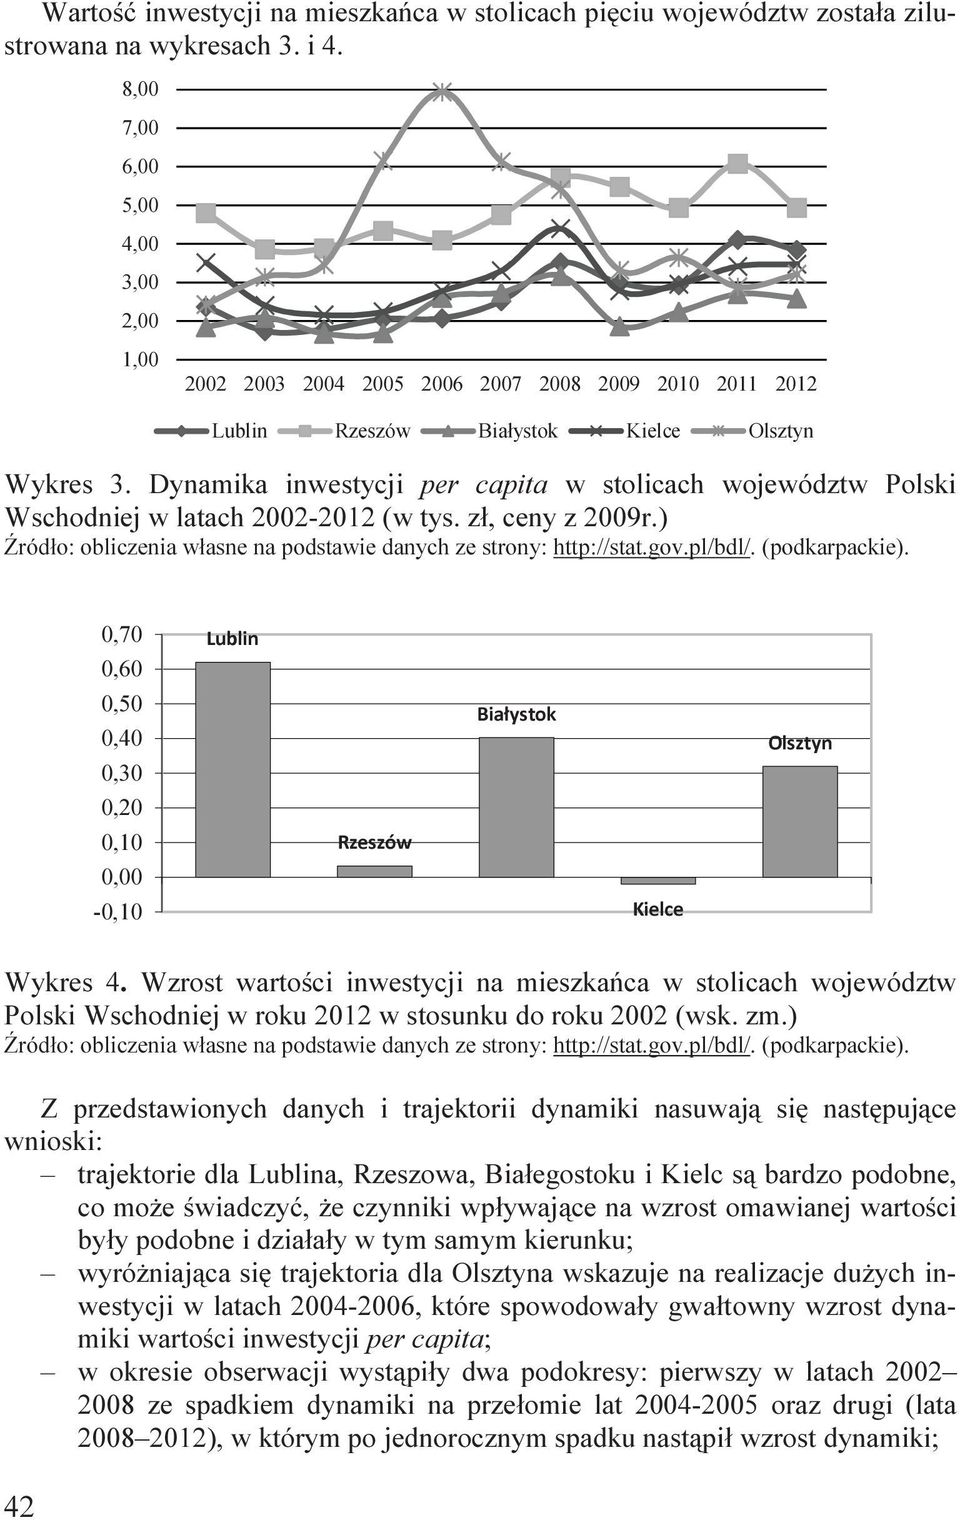 Dynamka nwestycj per capta w stolcach województw Polsk Wschodnej w latach 2002-2012 (w tys. zł, ceny z 2009r.) Źródło: oblczena własne na podstawe danych ze strony: http://stat.gov.pl/bdl/.